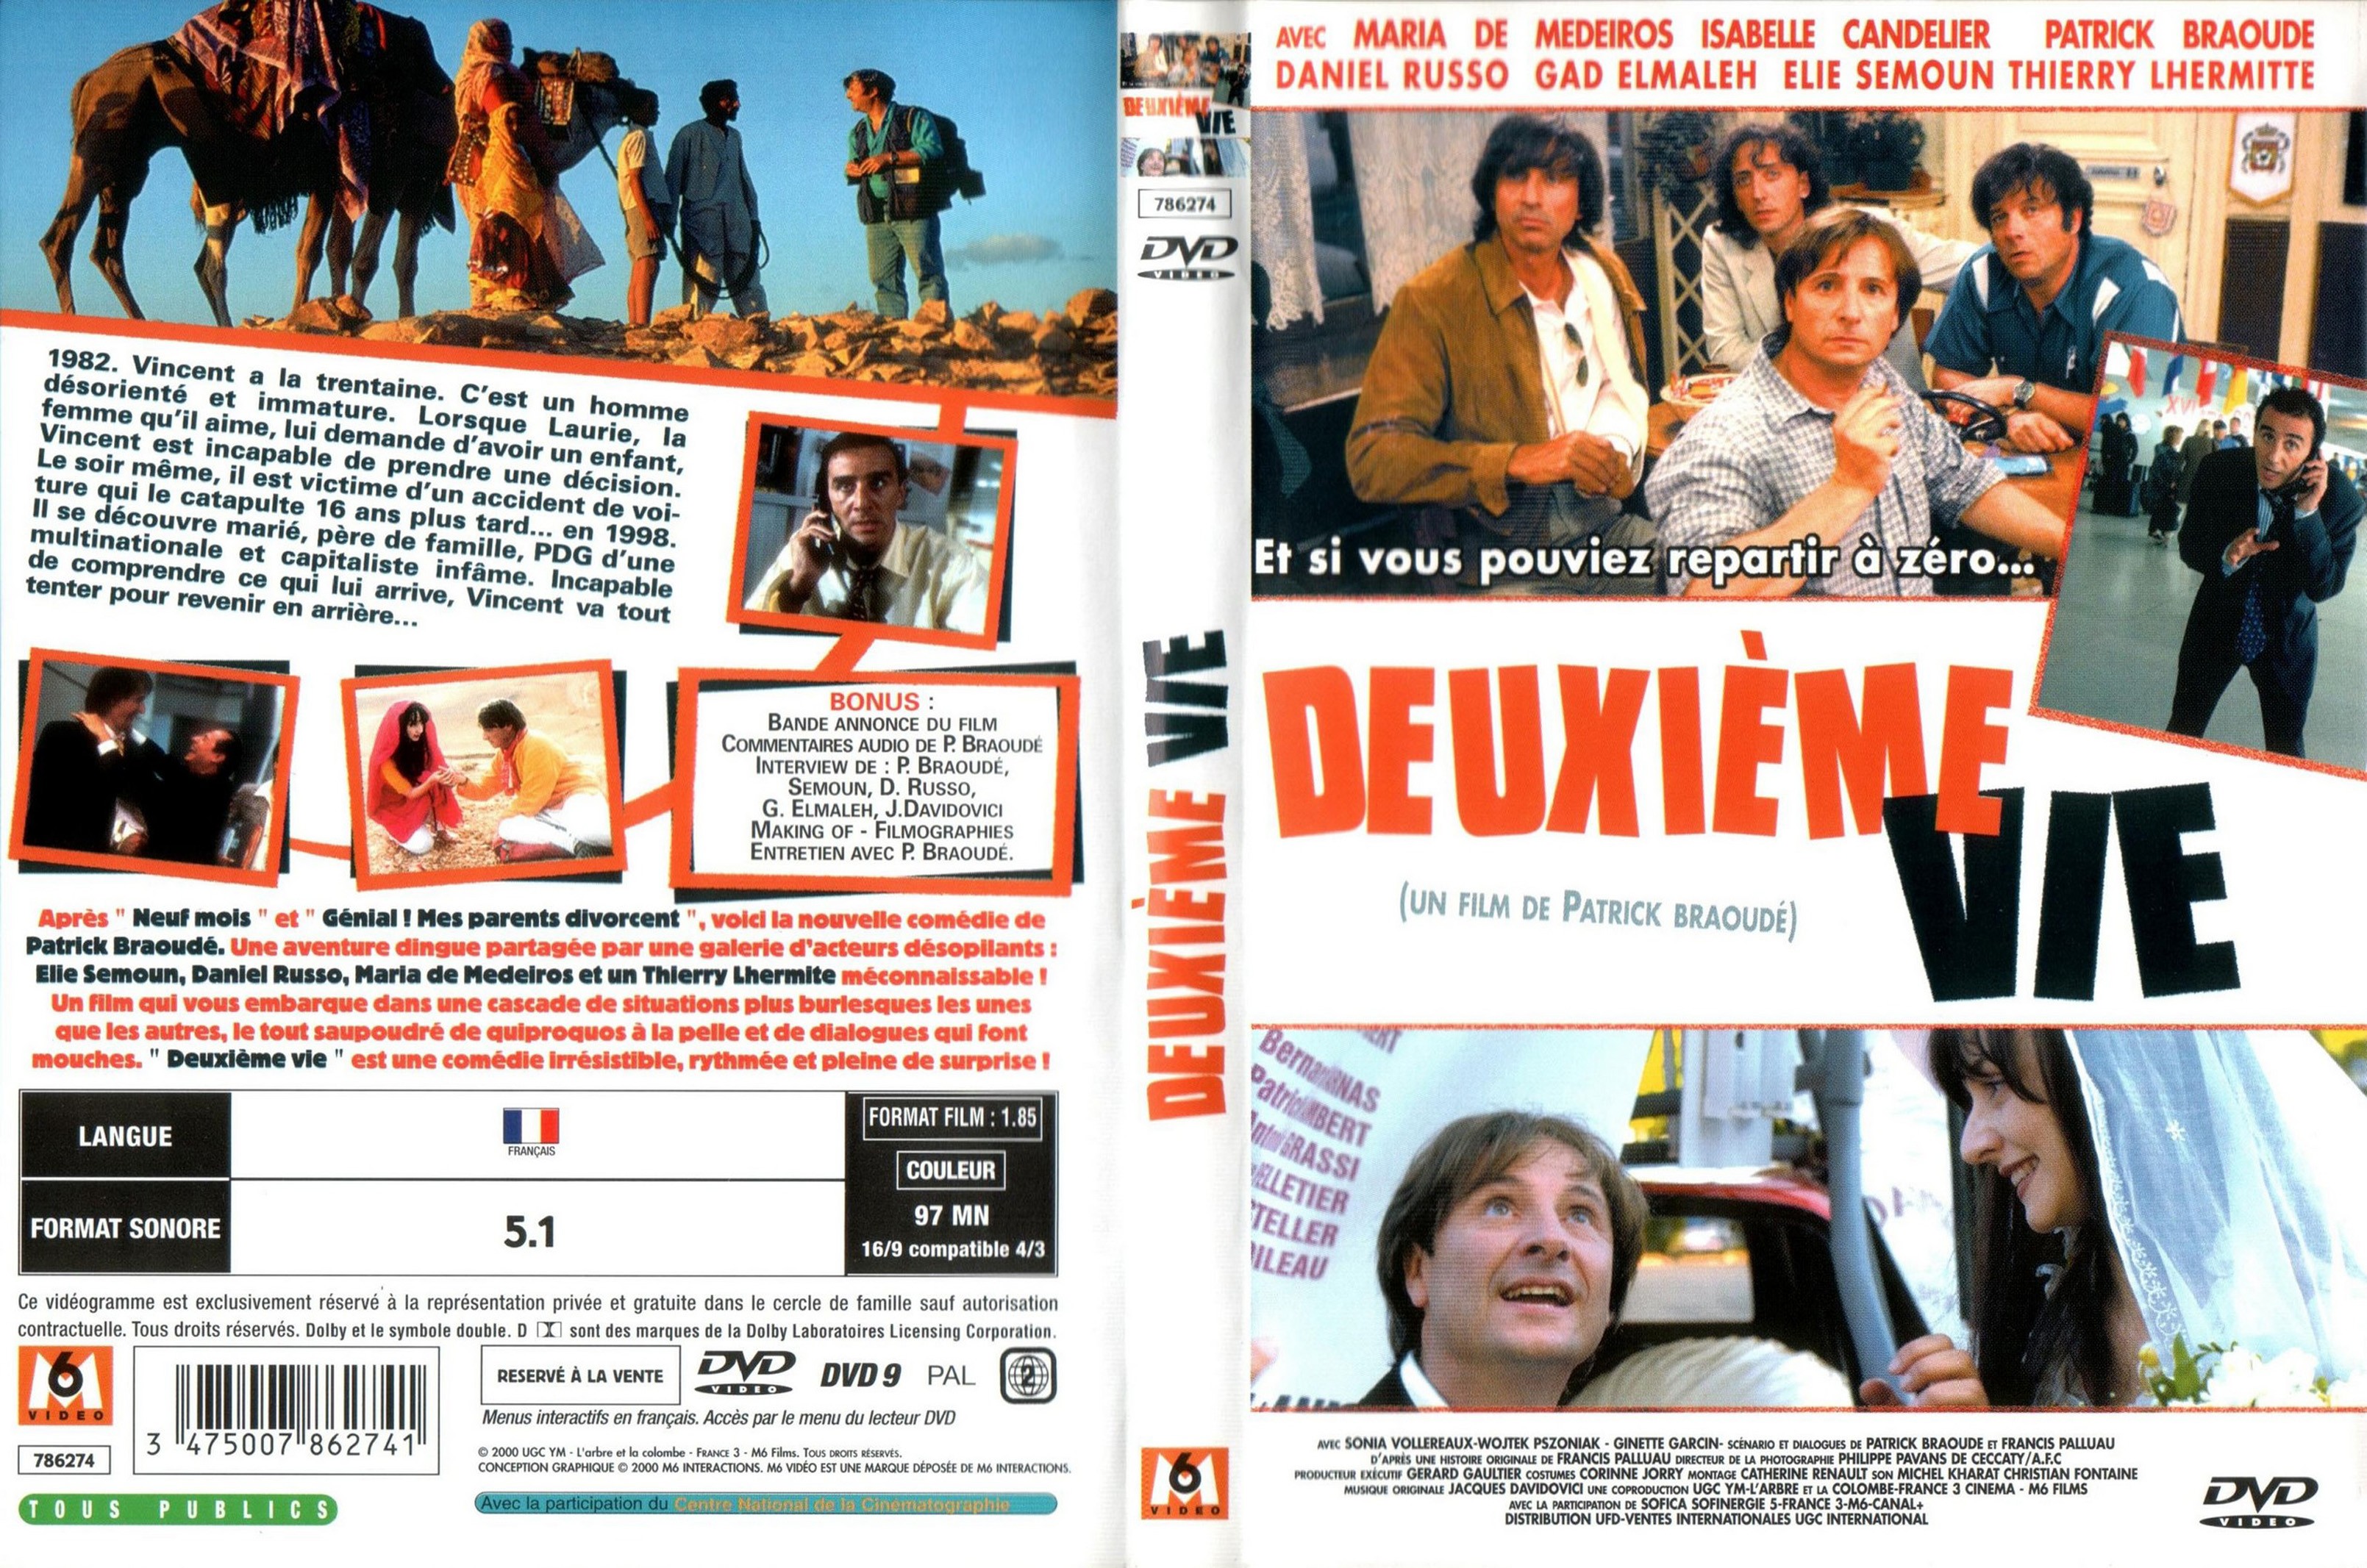 Jaquette DVD Deuxime vie